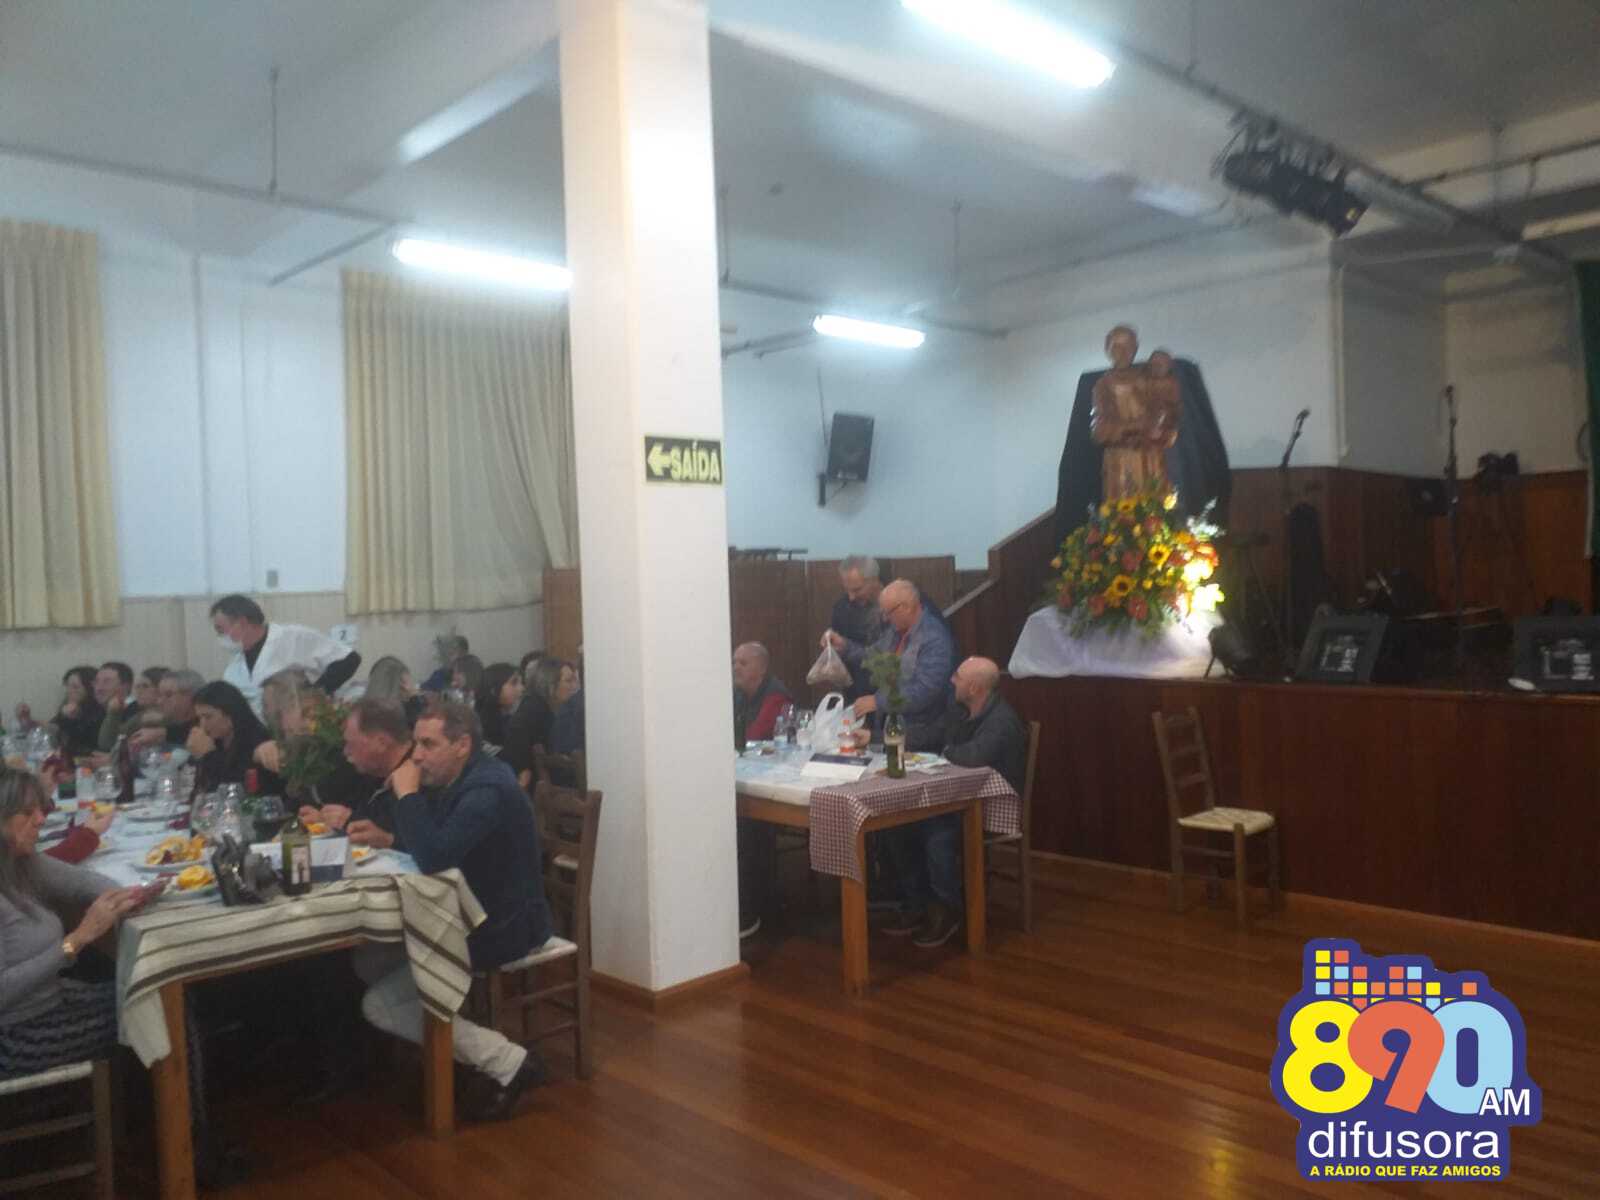 Jantar do Codeguim comemora 50 anos e lota salão paroquial em Bento Gonçalves